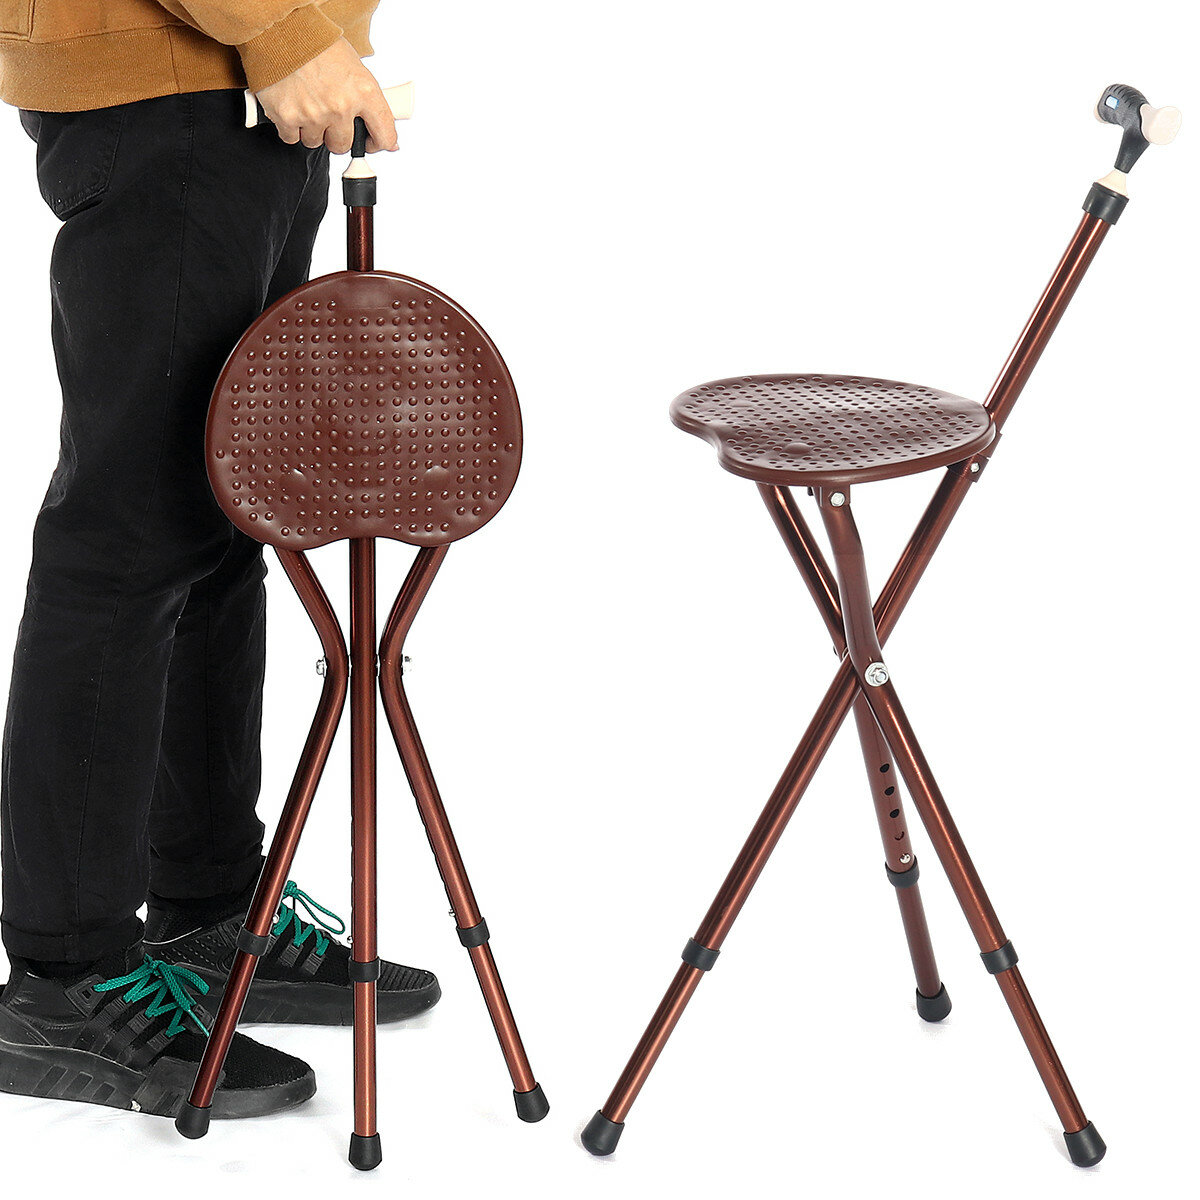 Składany krzesło z regulowaną wysokością i laską z lampą LED, składane krzesło do chodzenia dla osób starszych.